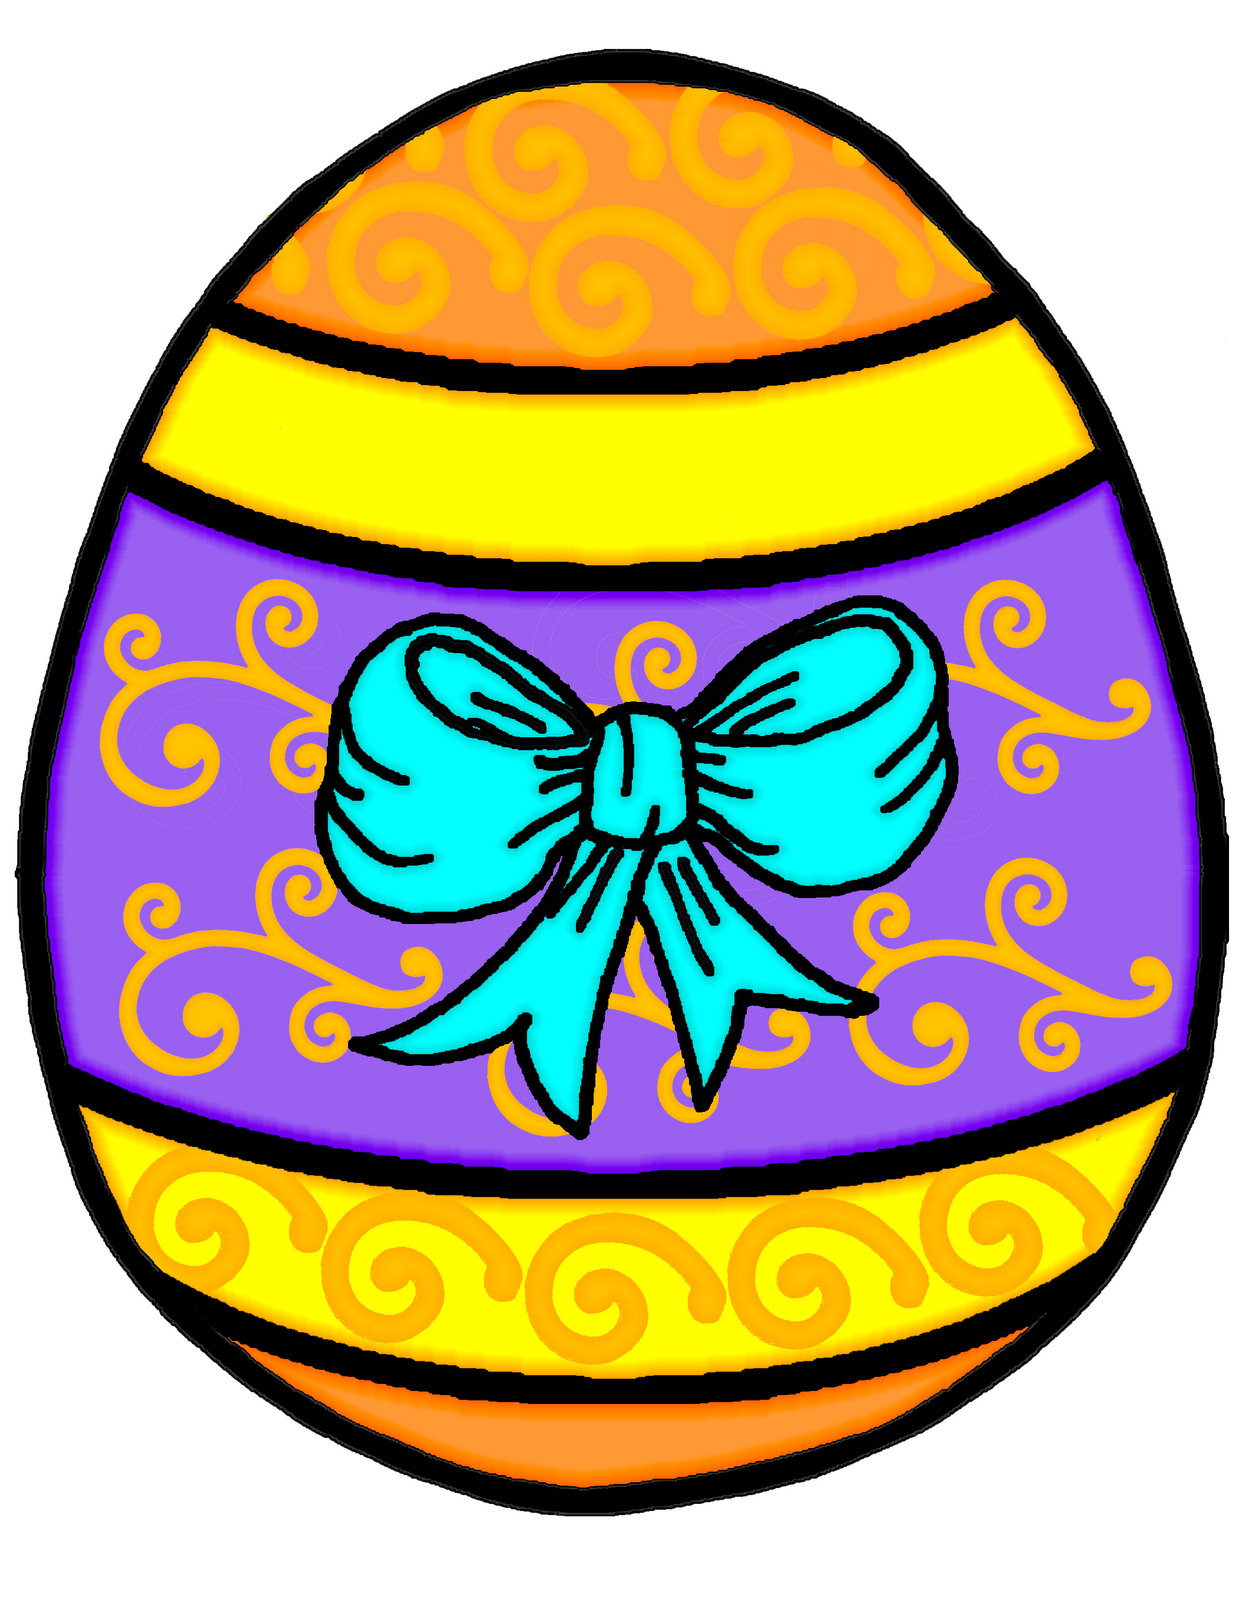 Easter egg clip art for the easter season - Cliparting.com